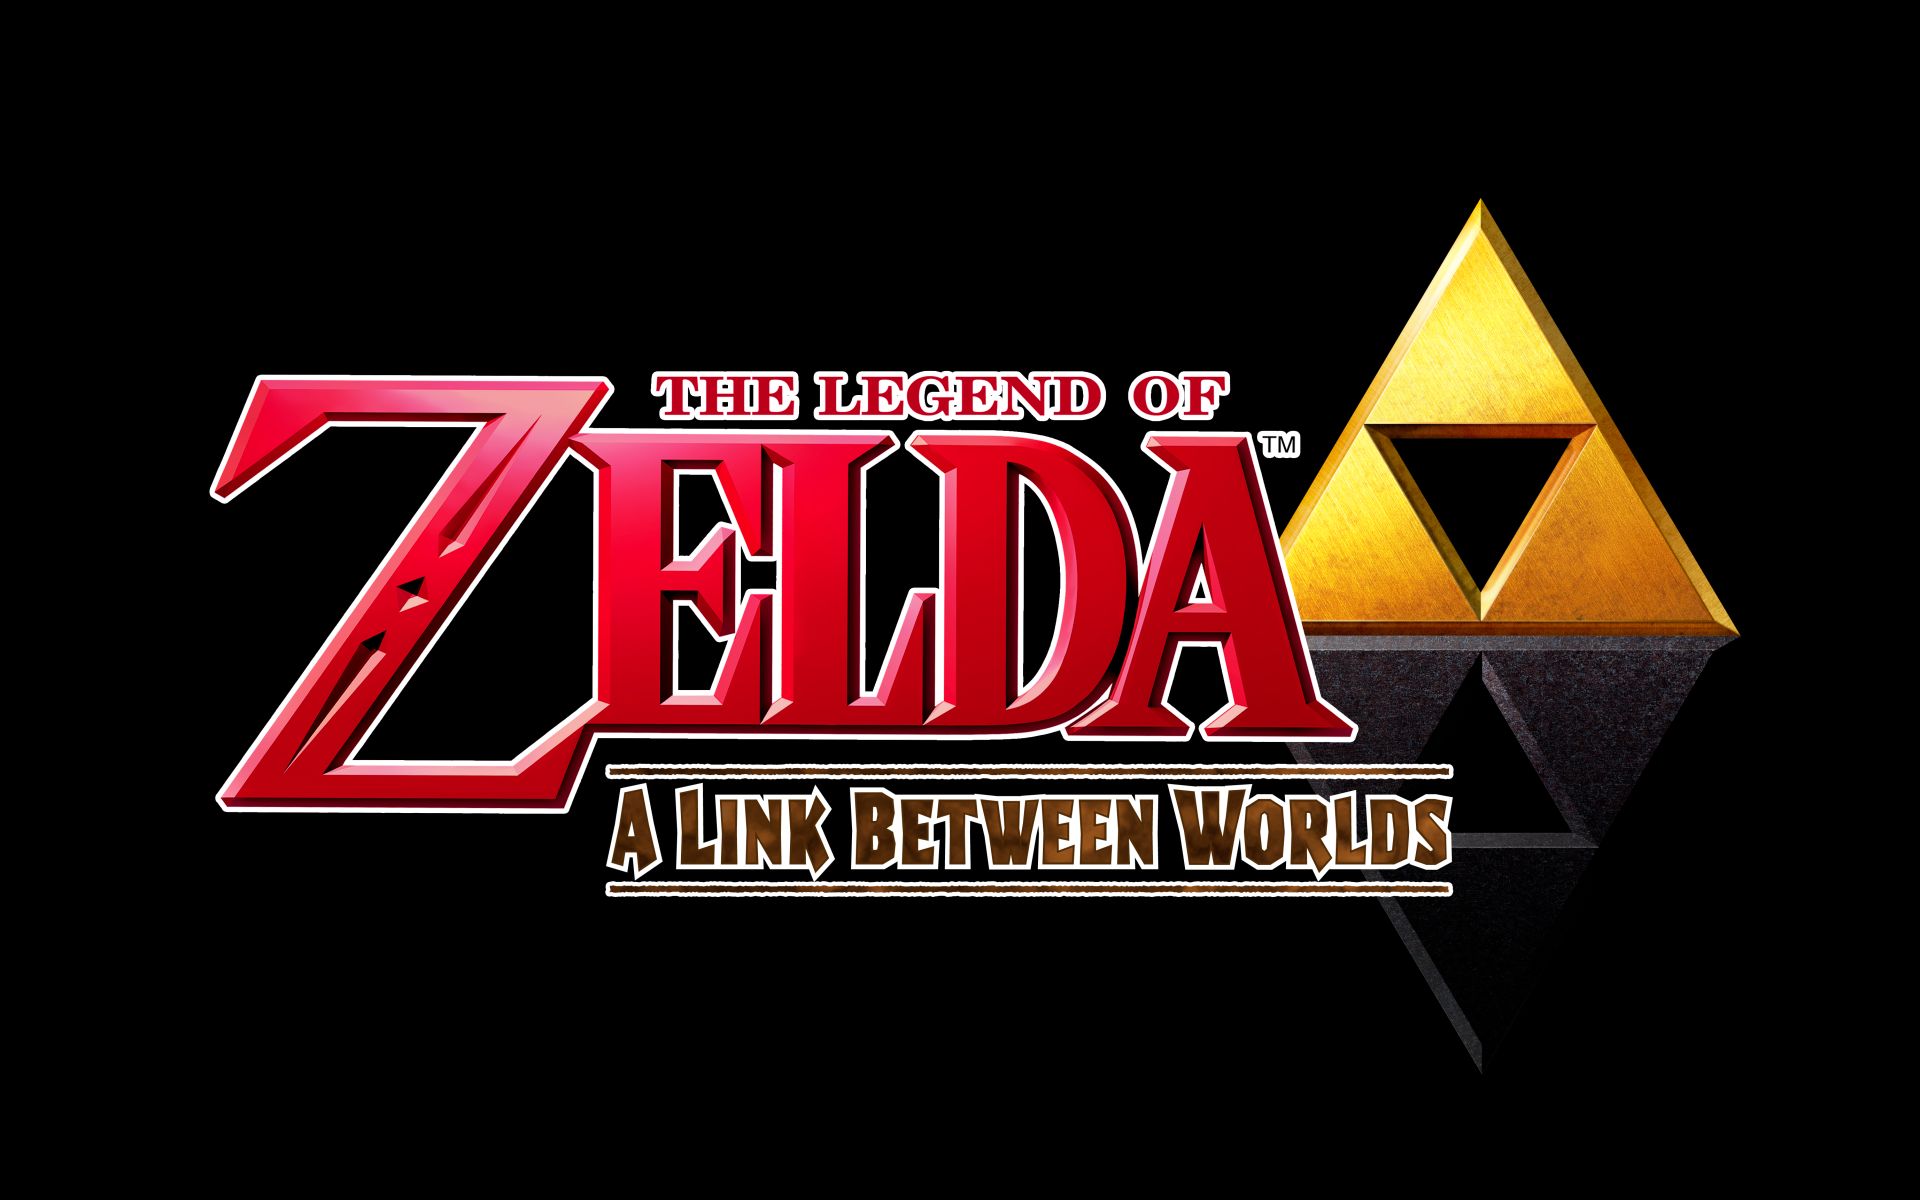 The Legend Of Zelda: A Link Between Worlds Wallpapers - Wallpaper Cave